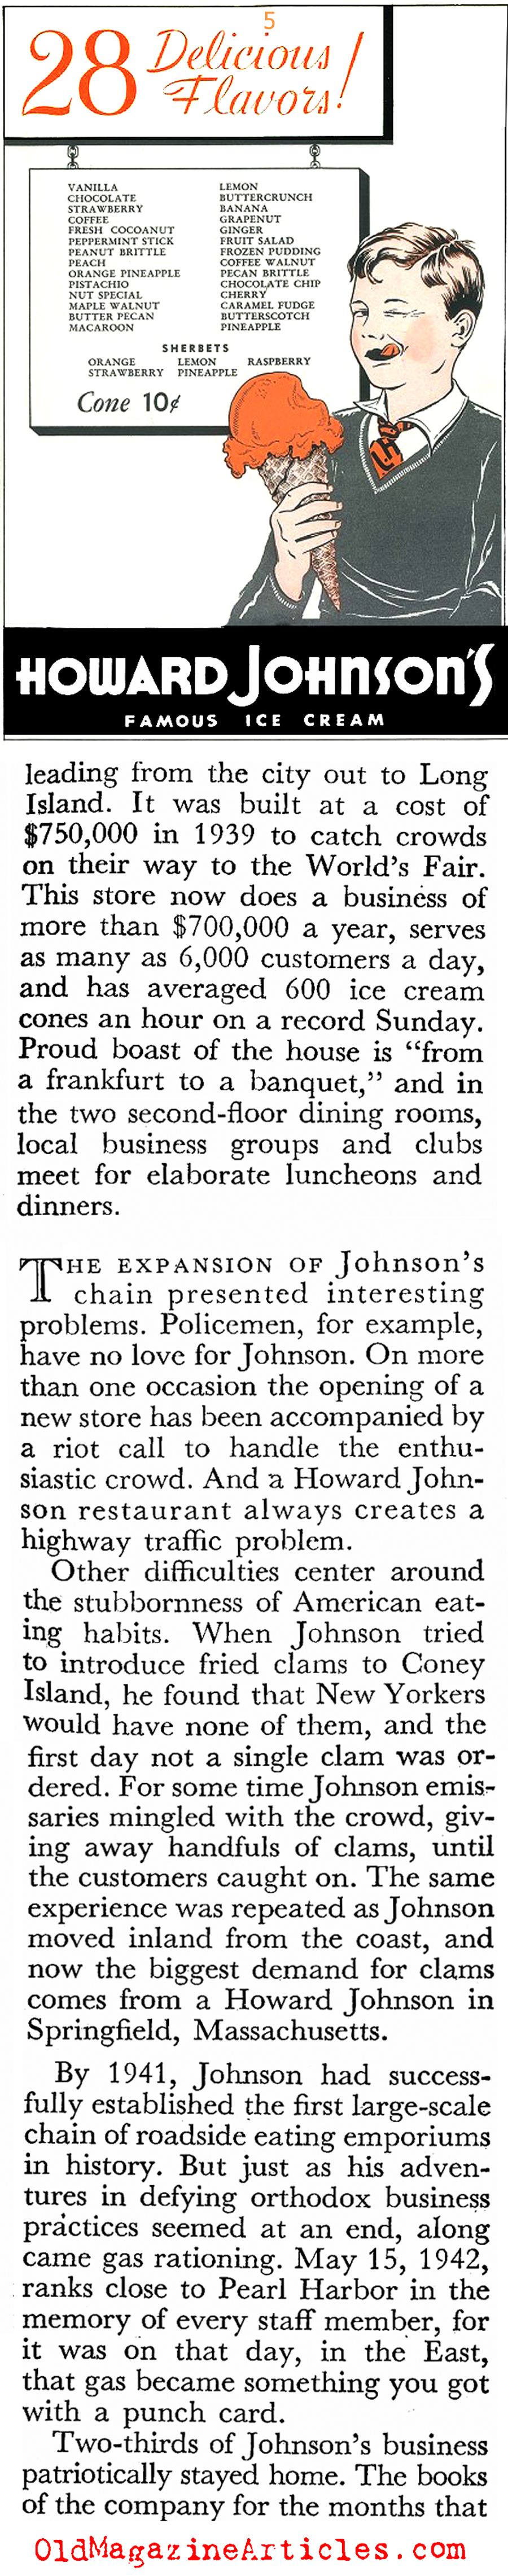 Howard Johnson's Roadside Restaurants (Coronet Magazine, 1946)